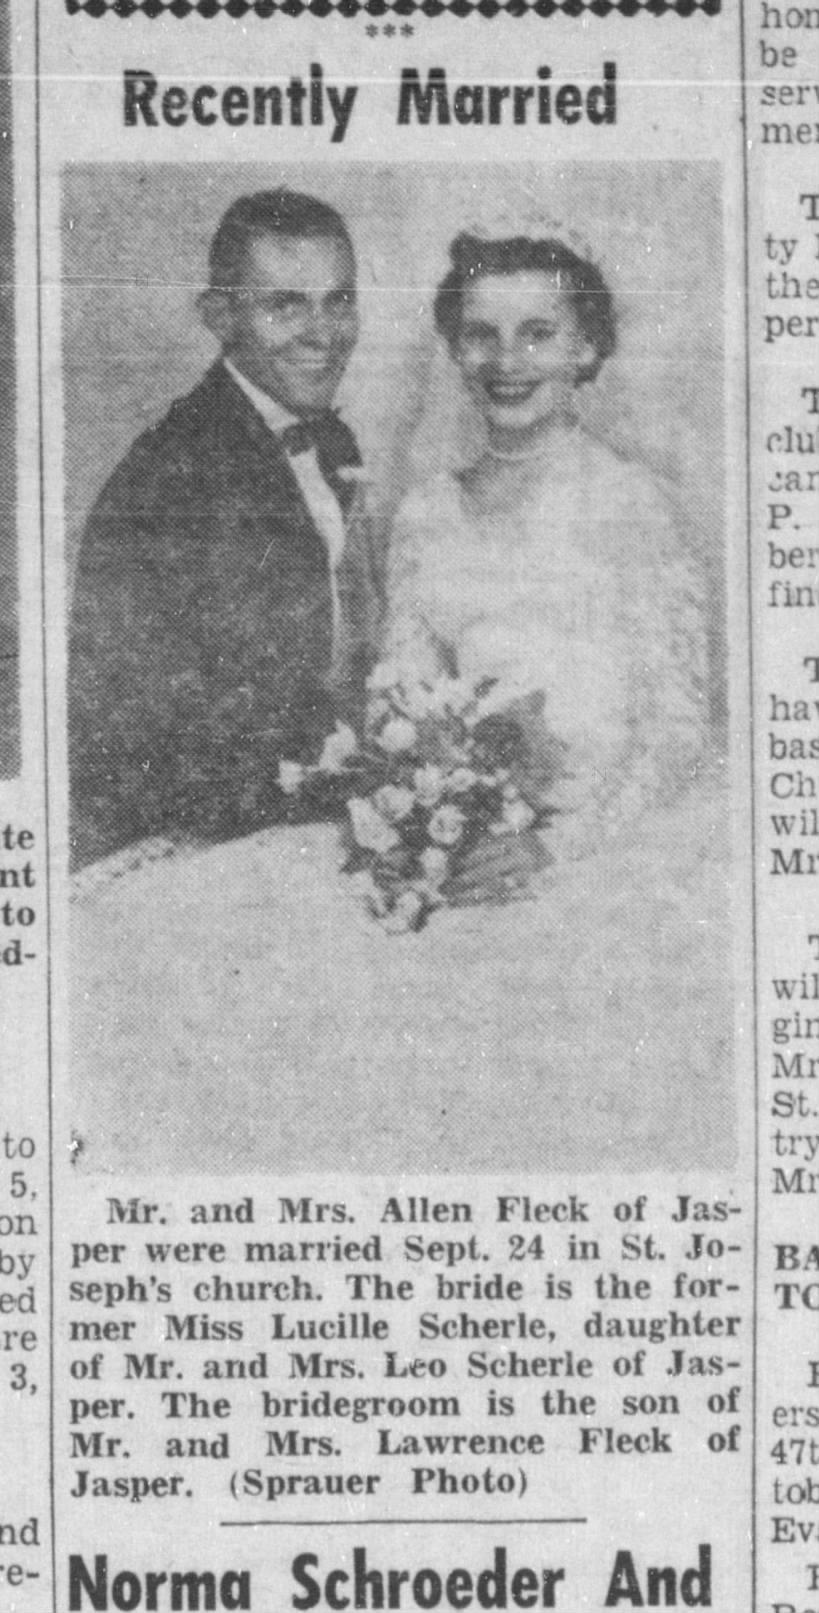 marriage of Allen Fleck, Oct 15, 1957